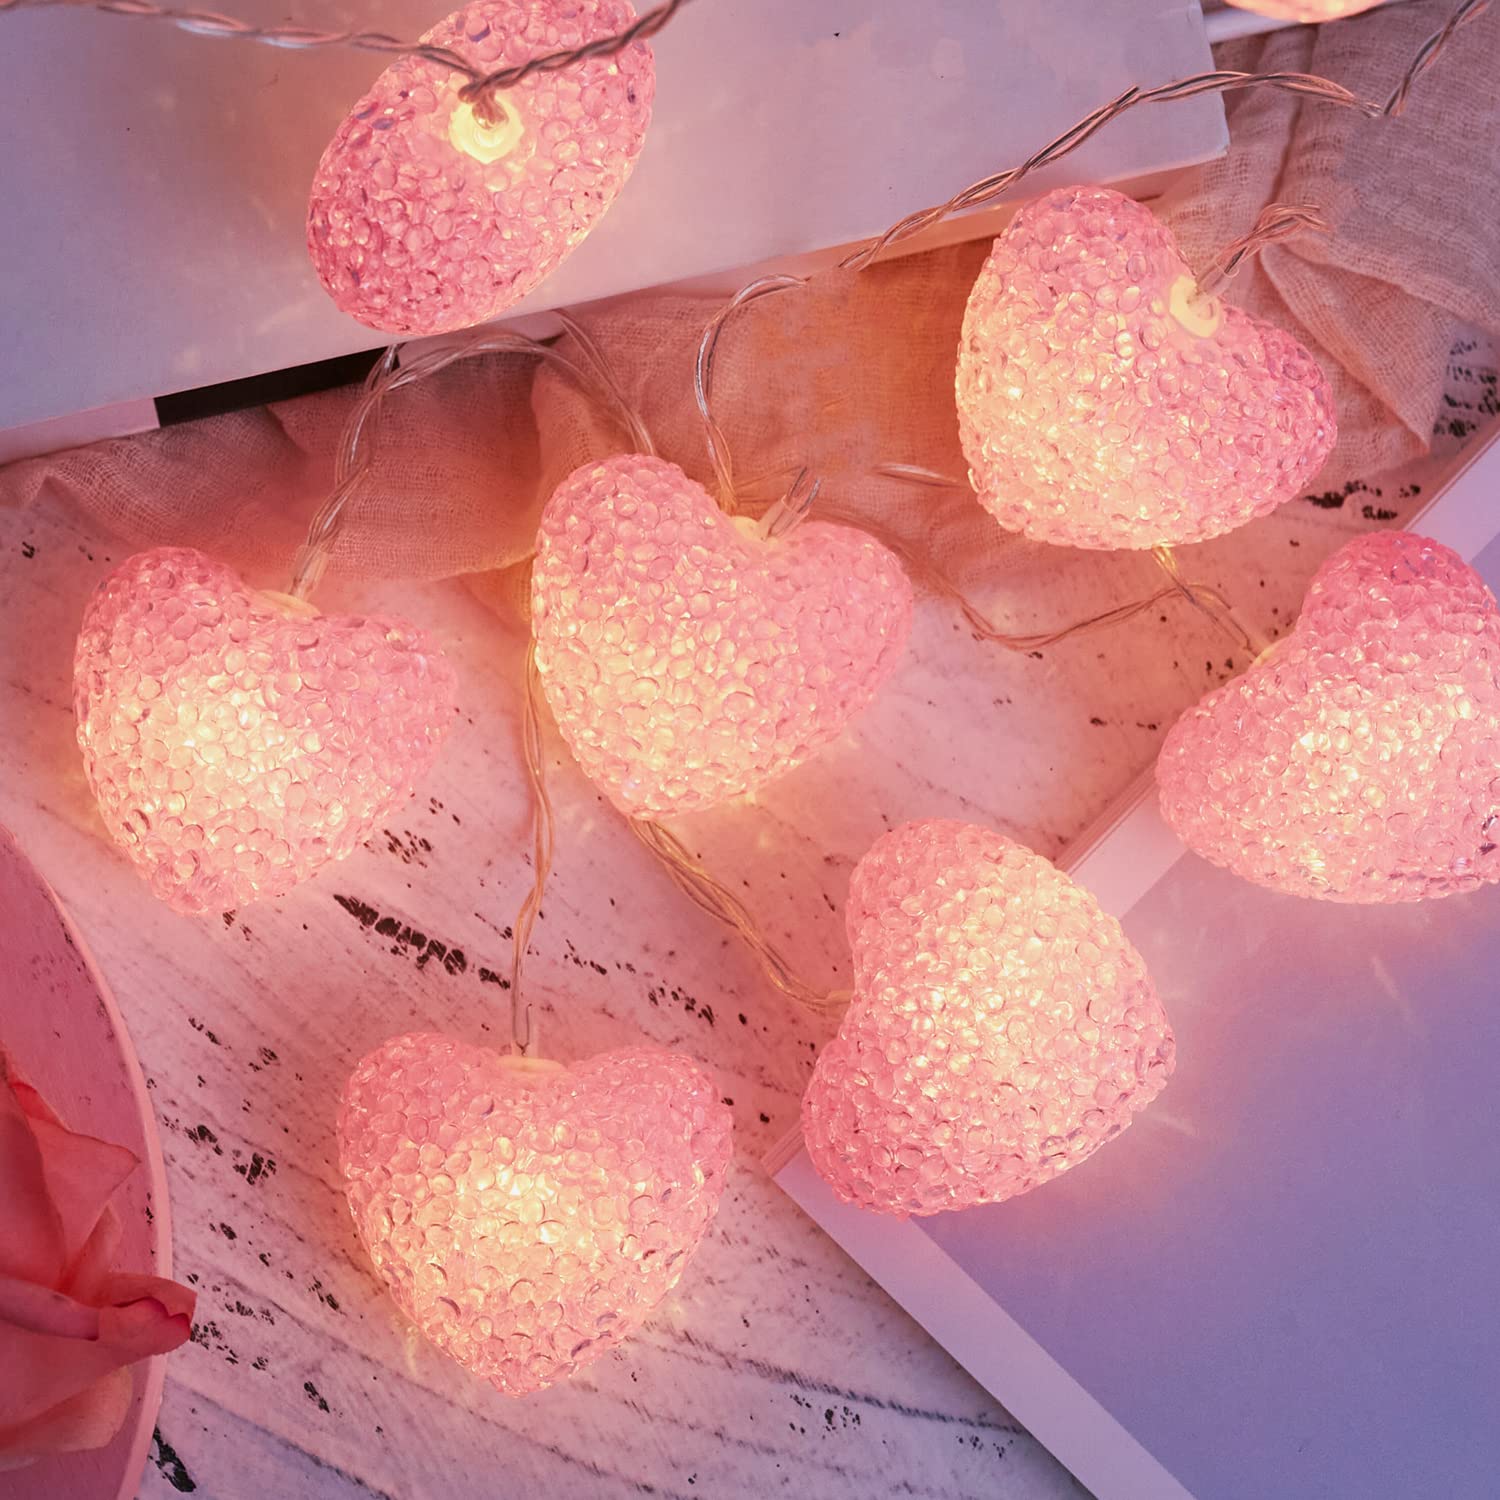 Guirlande Lumineuse Saint Valentin, 3m - 20 LED Guirlande